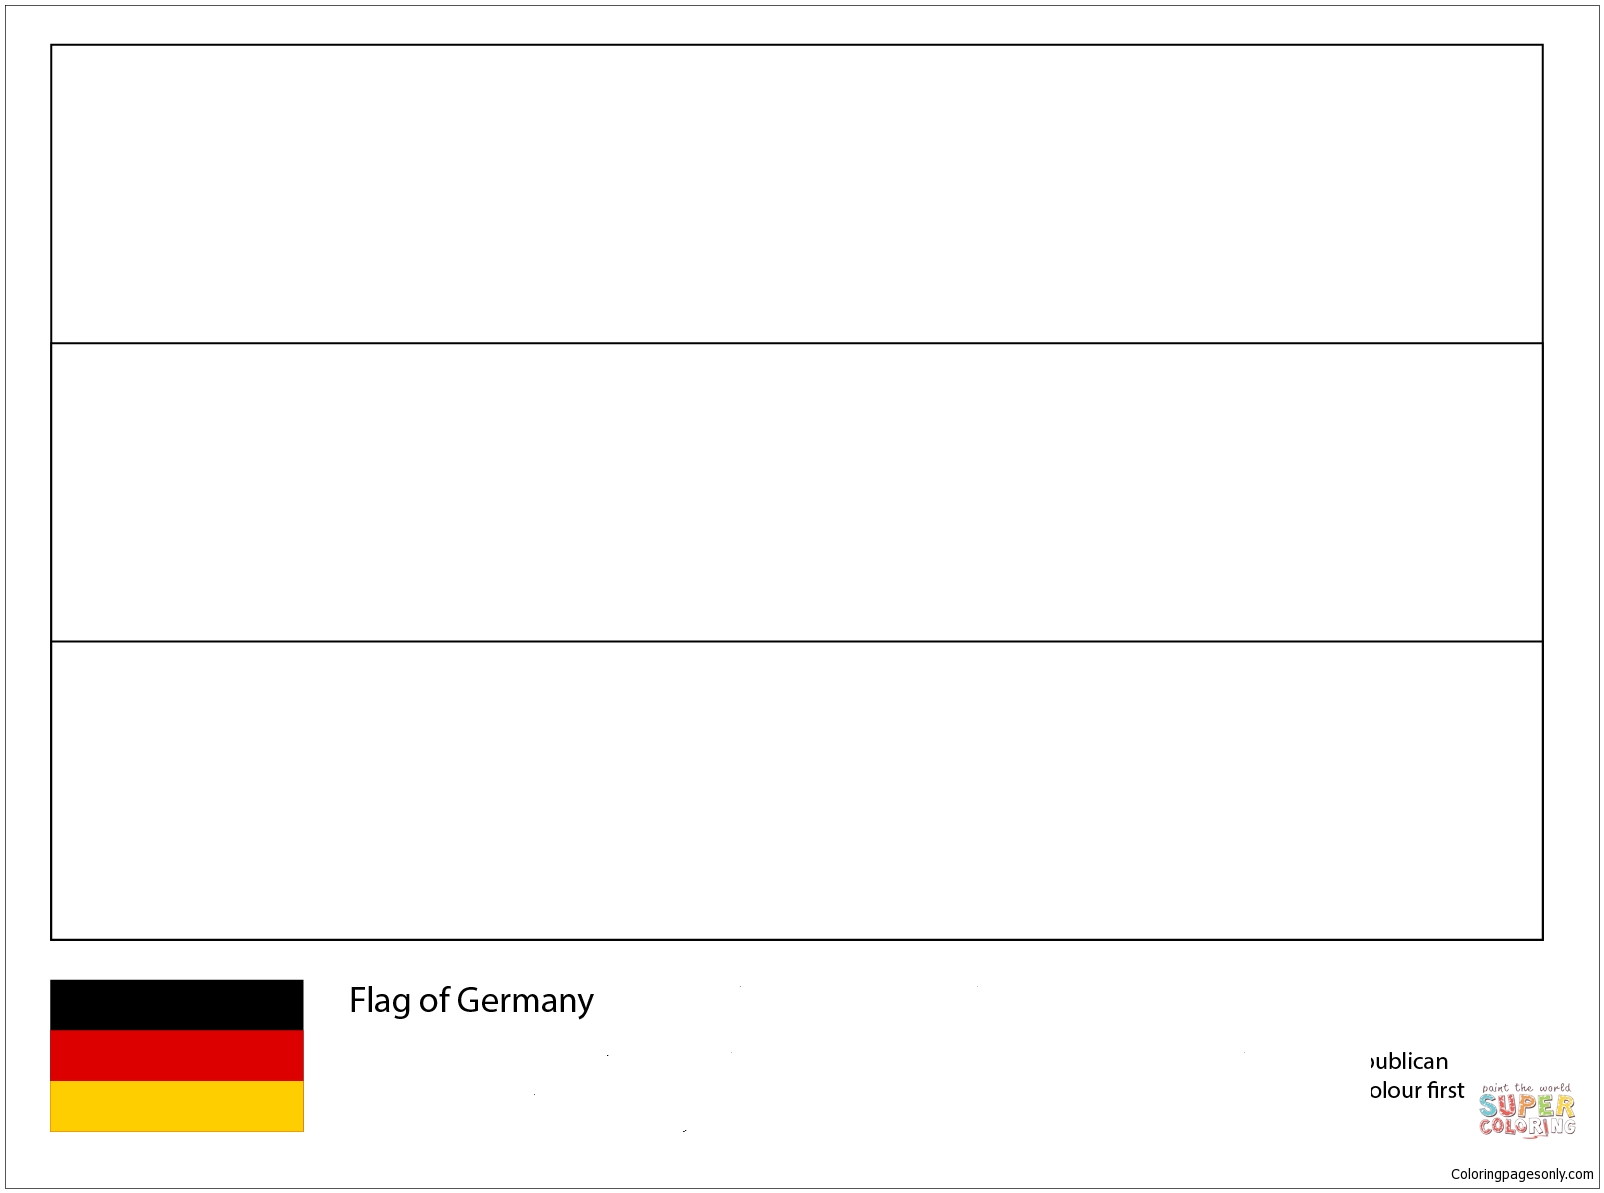 Bandiera della Germania-Mondiali 2018 dalle Bandiere dei Mondiali 2018